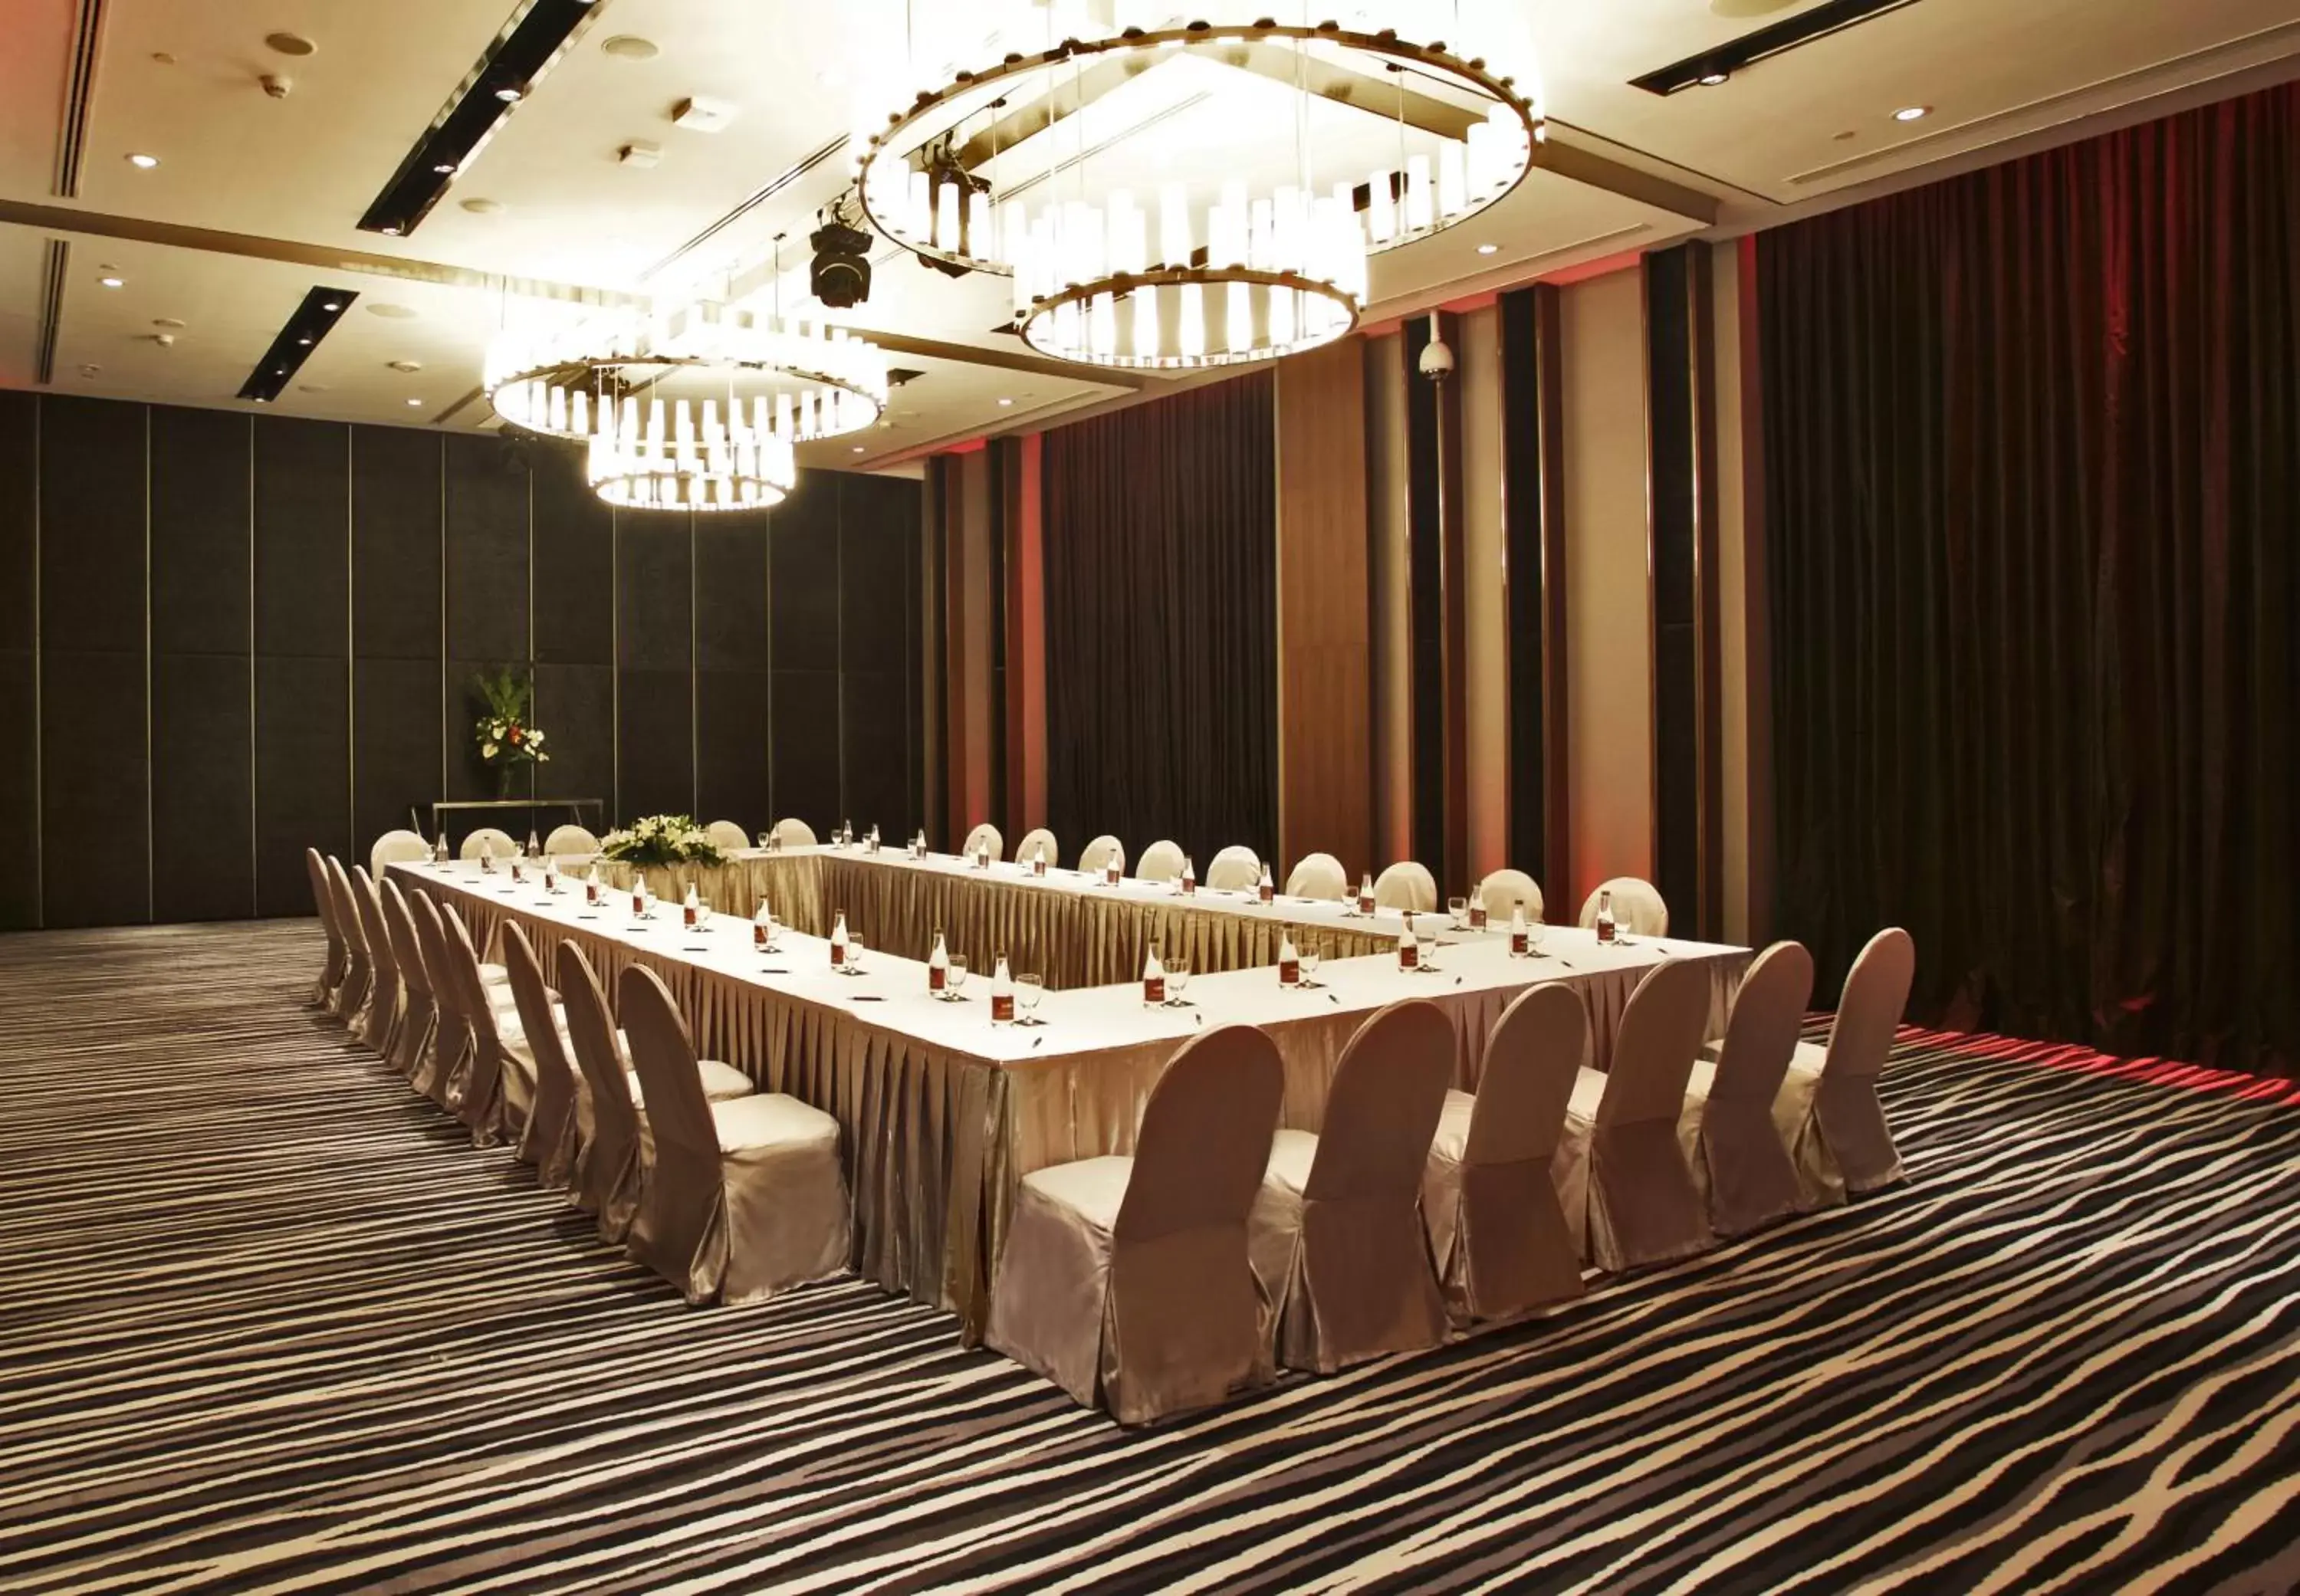 Banquet/Function facilities in Amara Bangkok Hotel